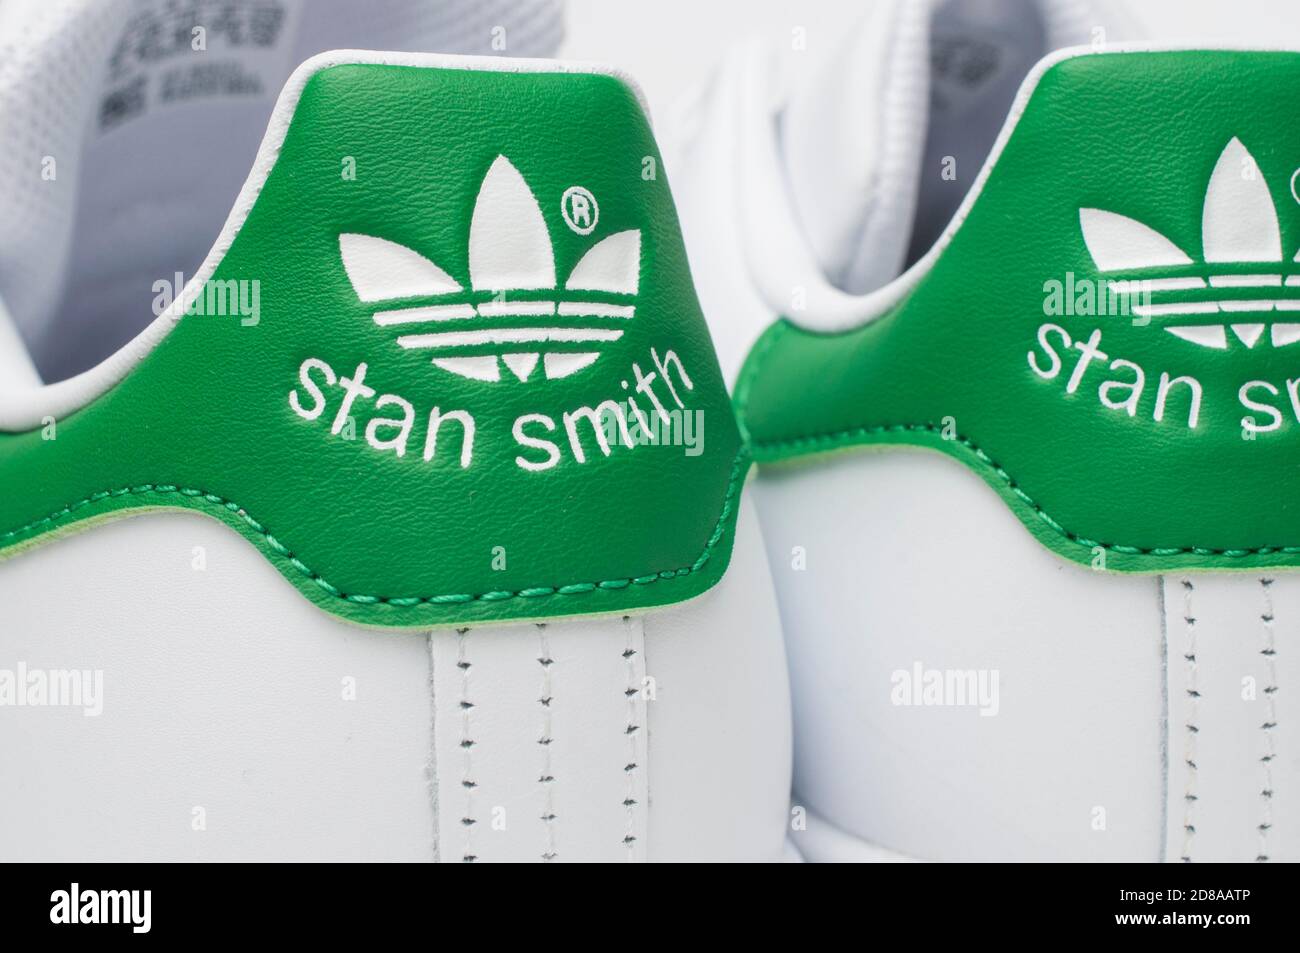 Stan smith sneaker immagini e fotografie stock ad alta risoluzione - Alamy